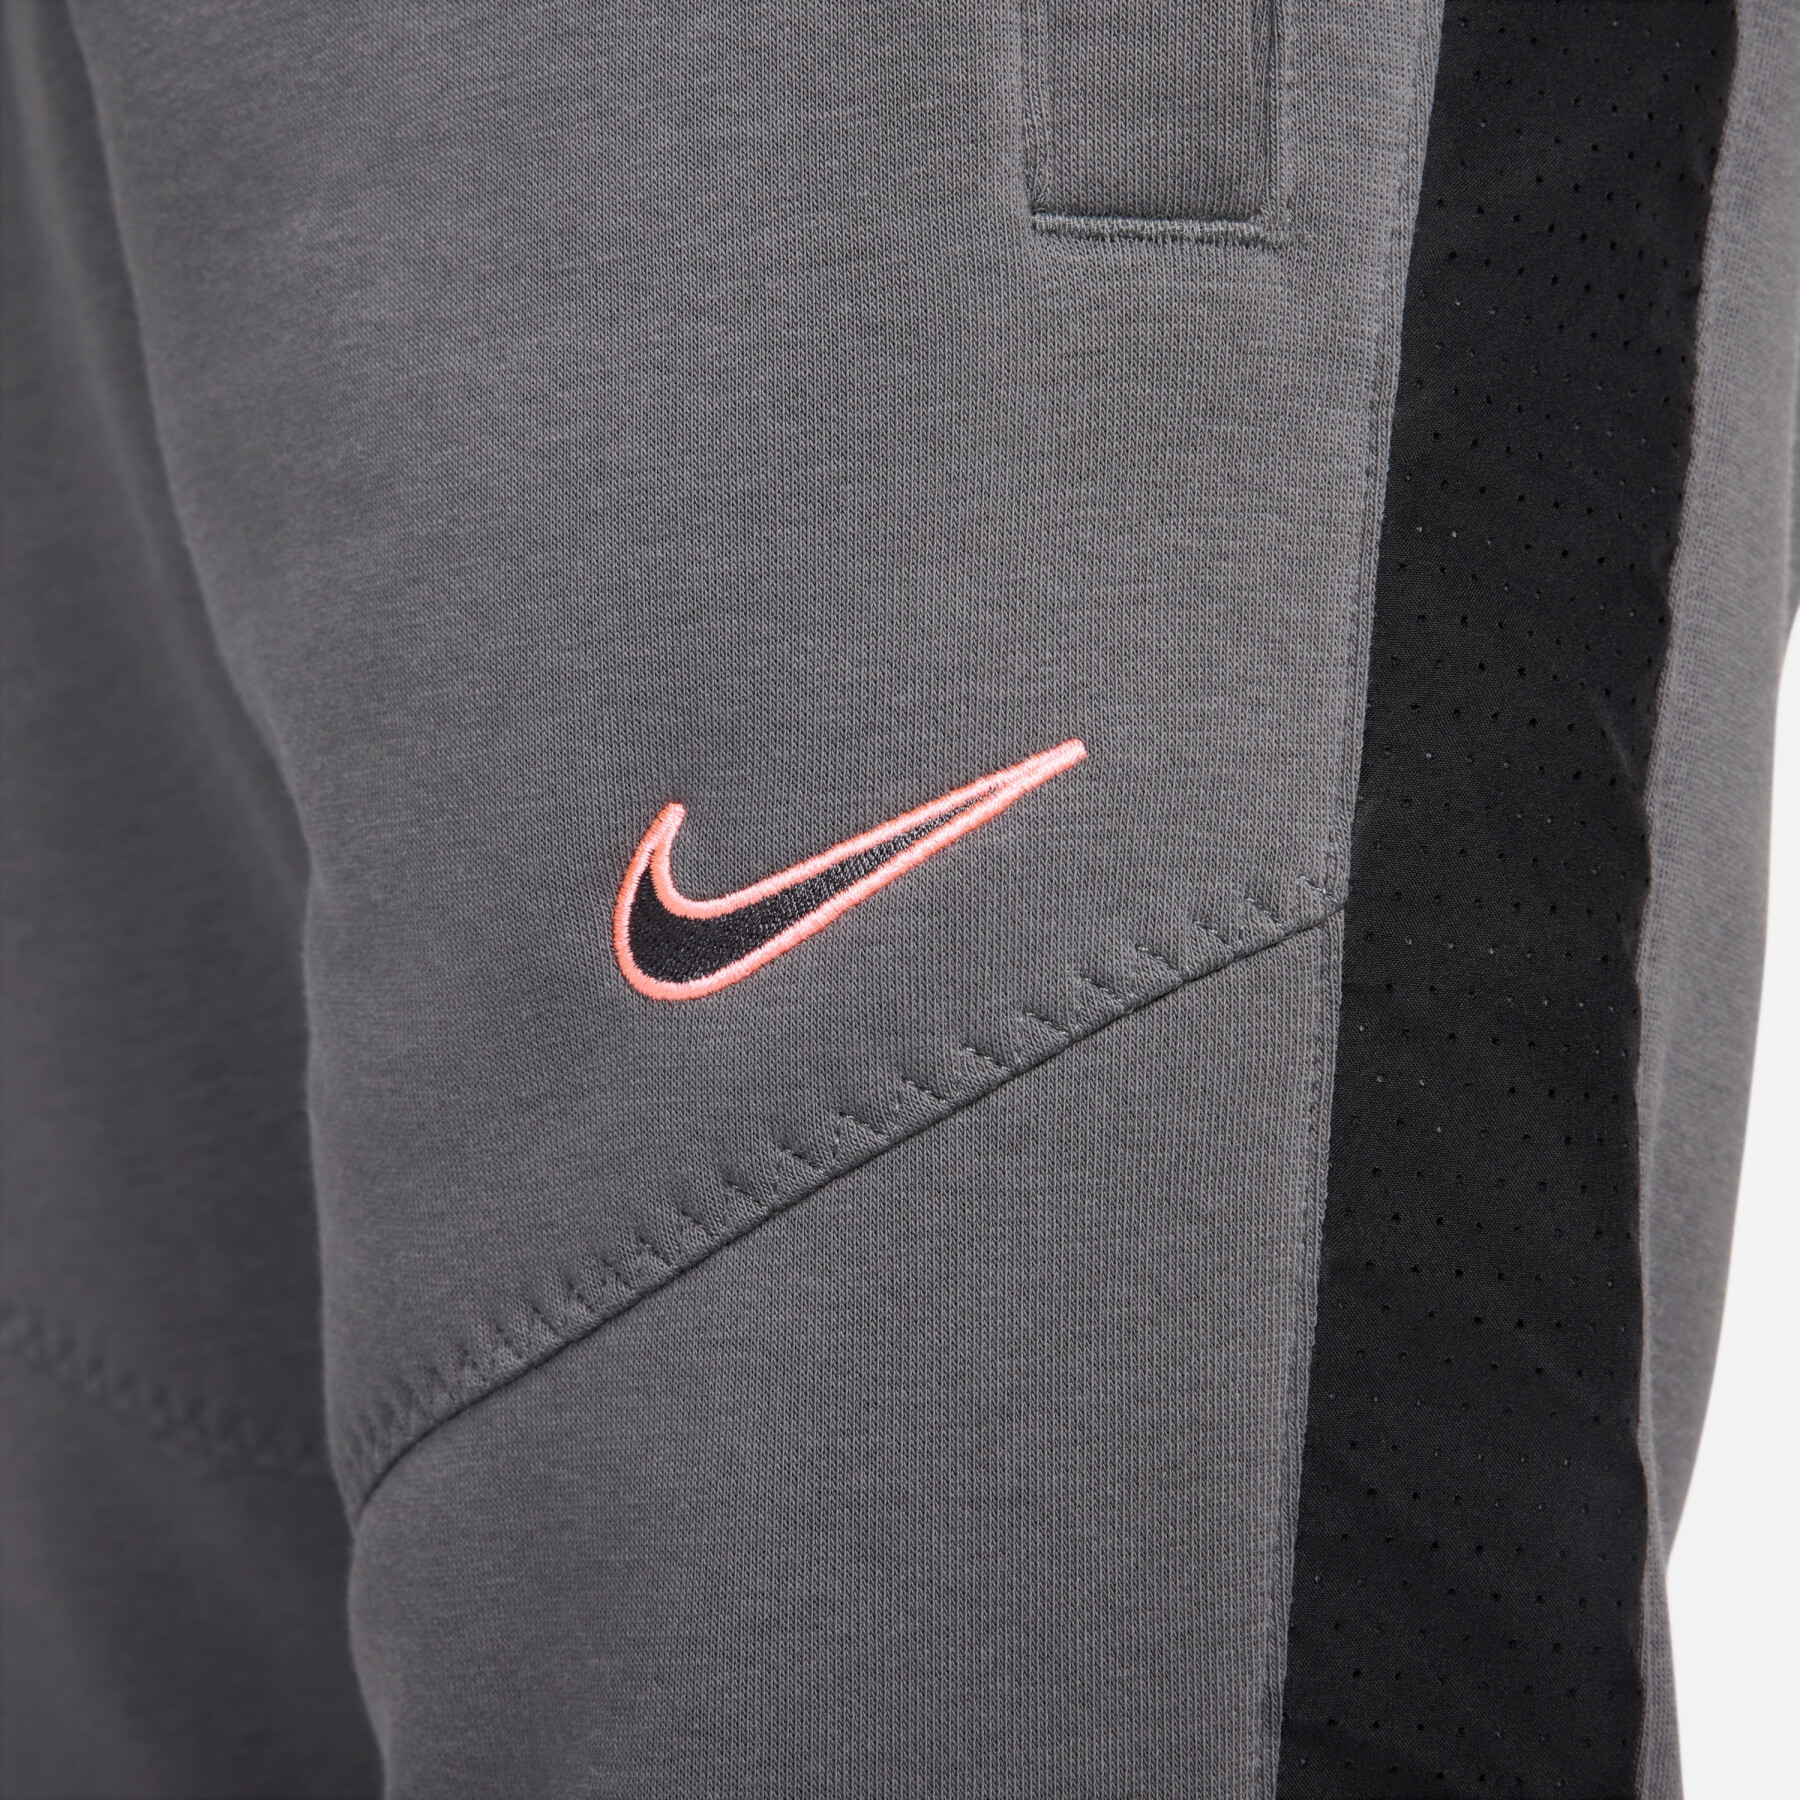 Pantaloni sportivi Nike